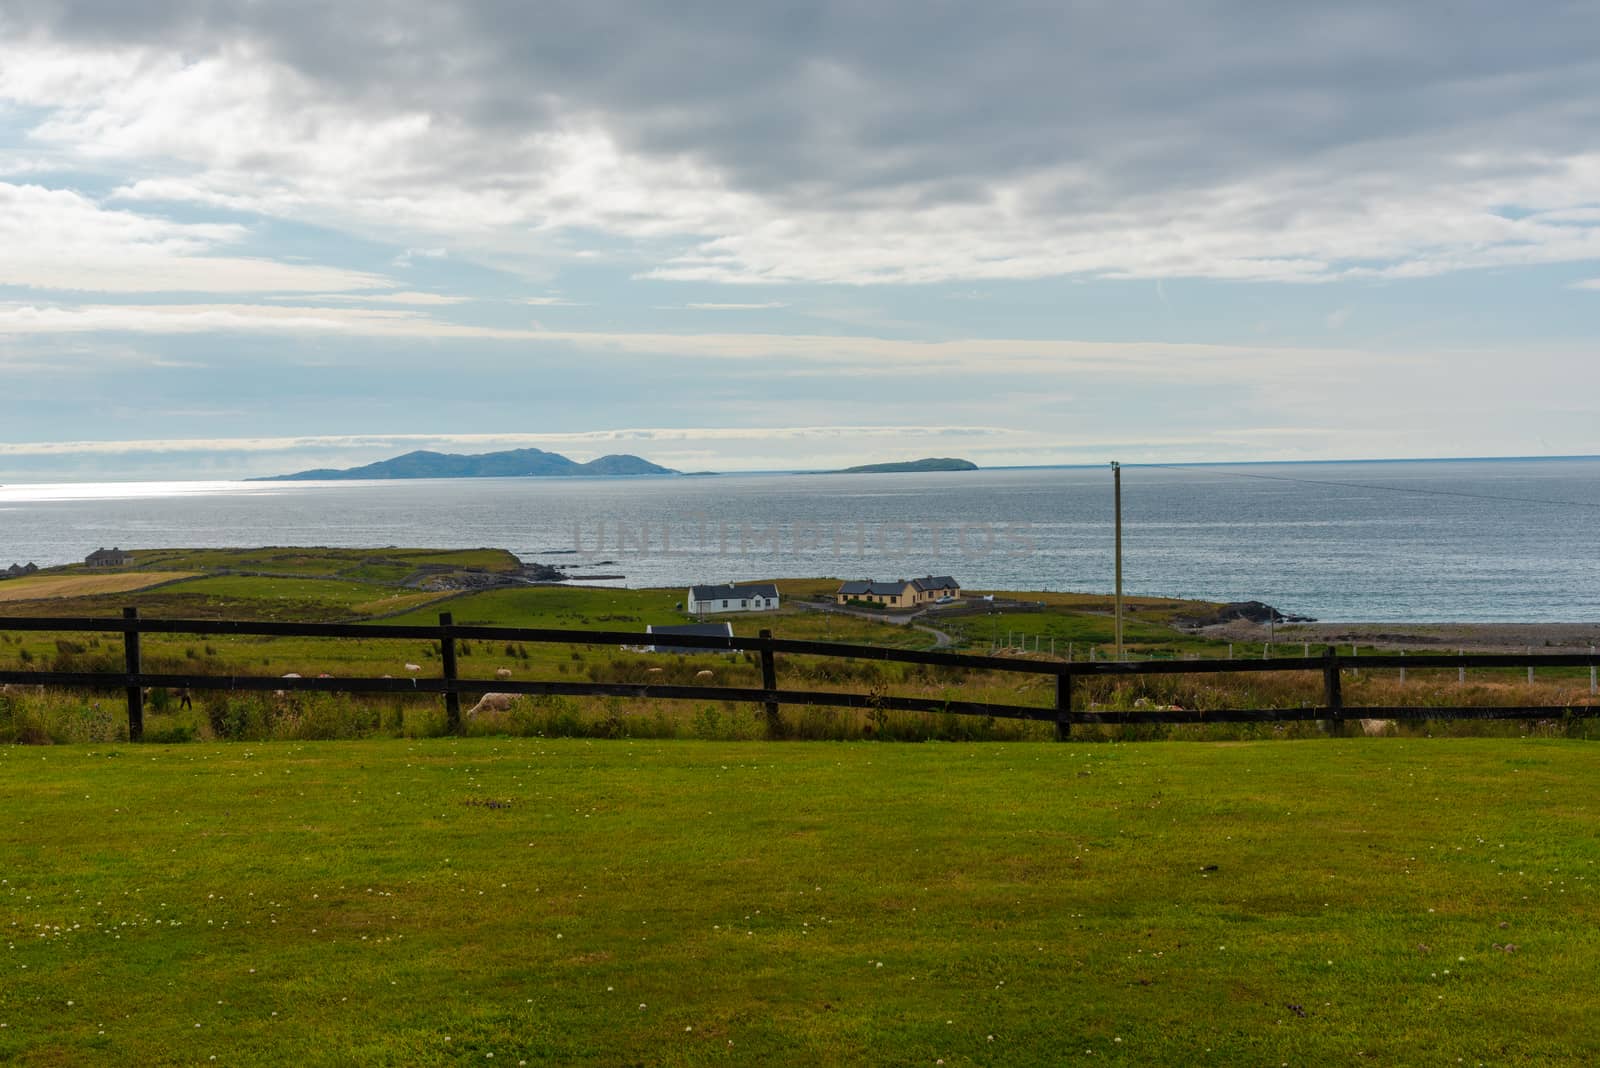 Photo of a sheep farm looks out over the Irish Sea.